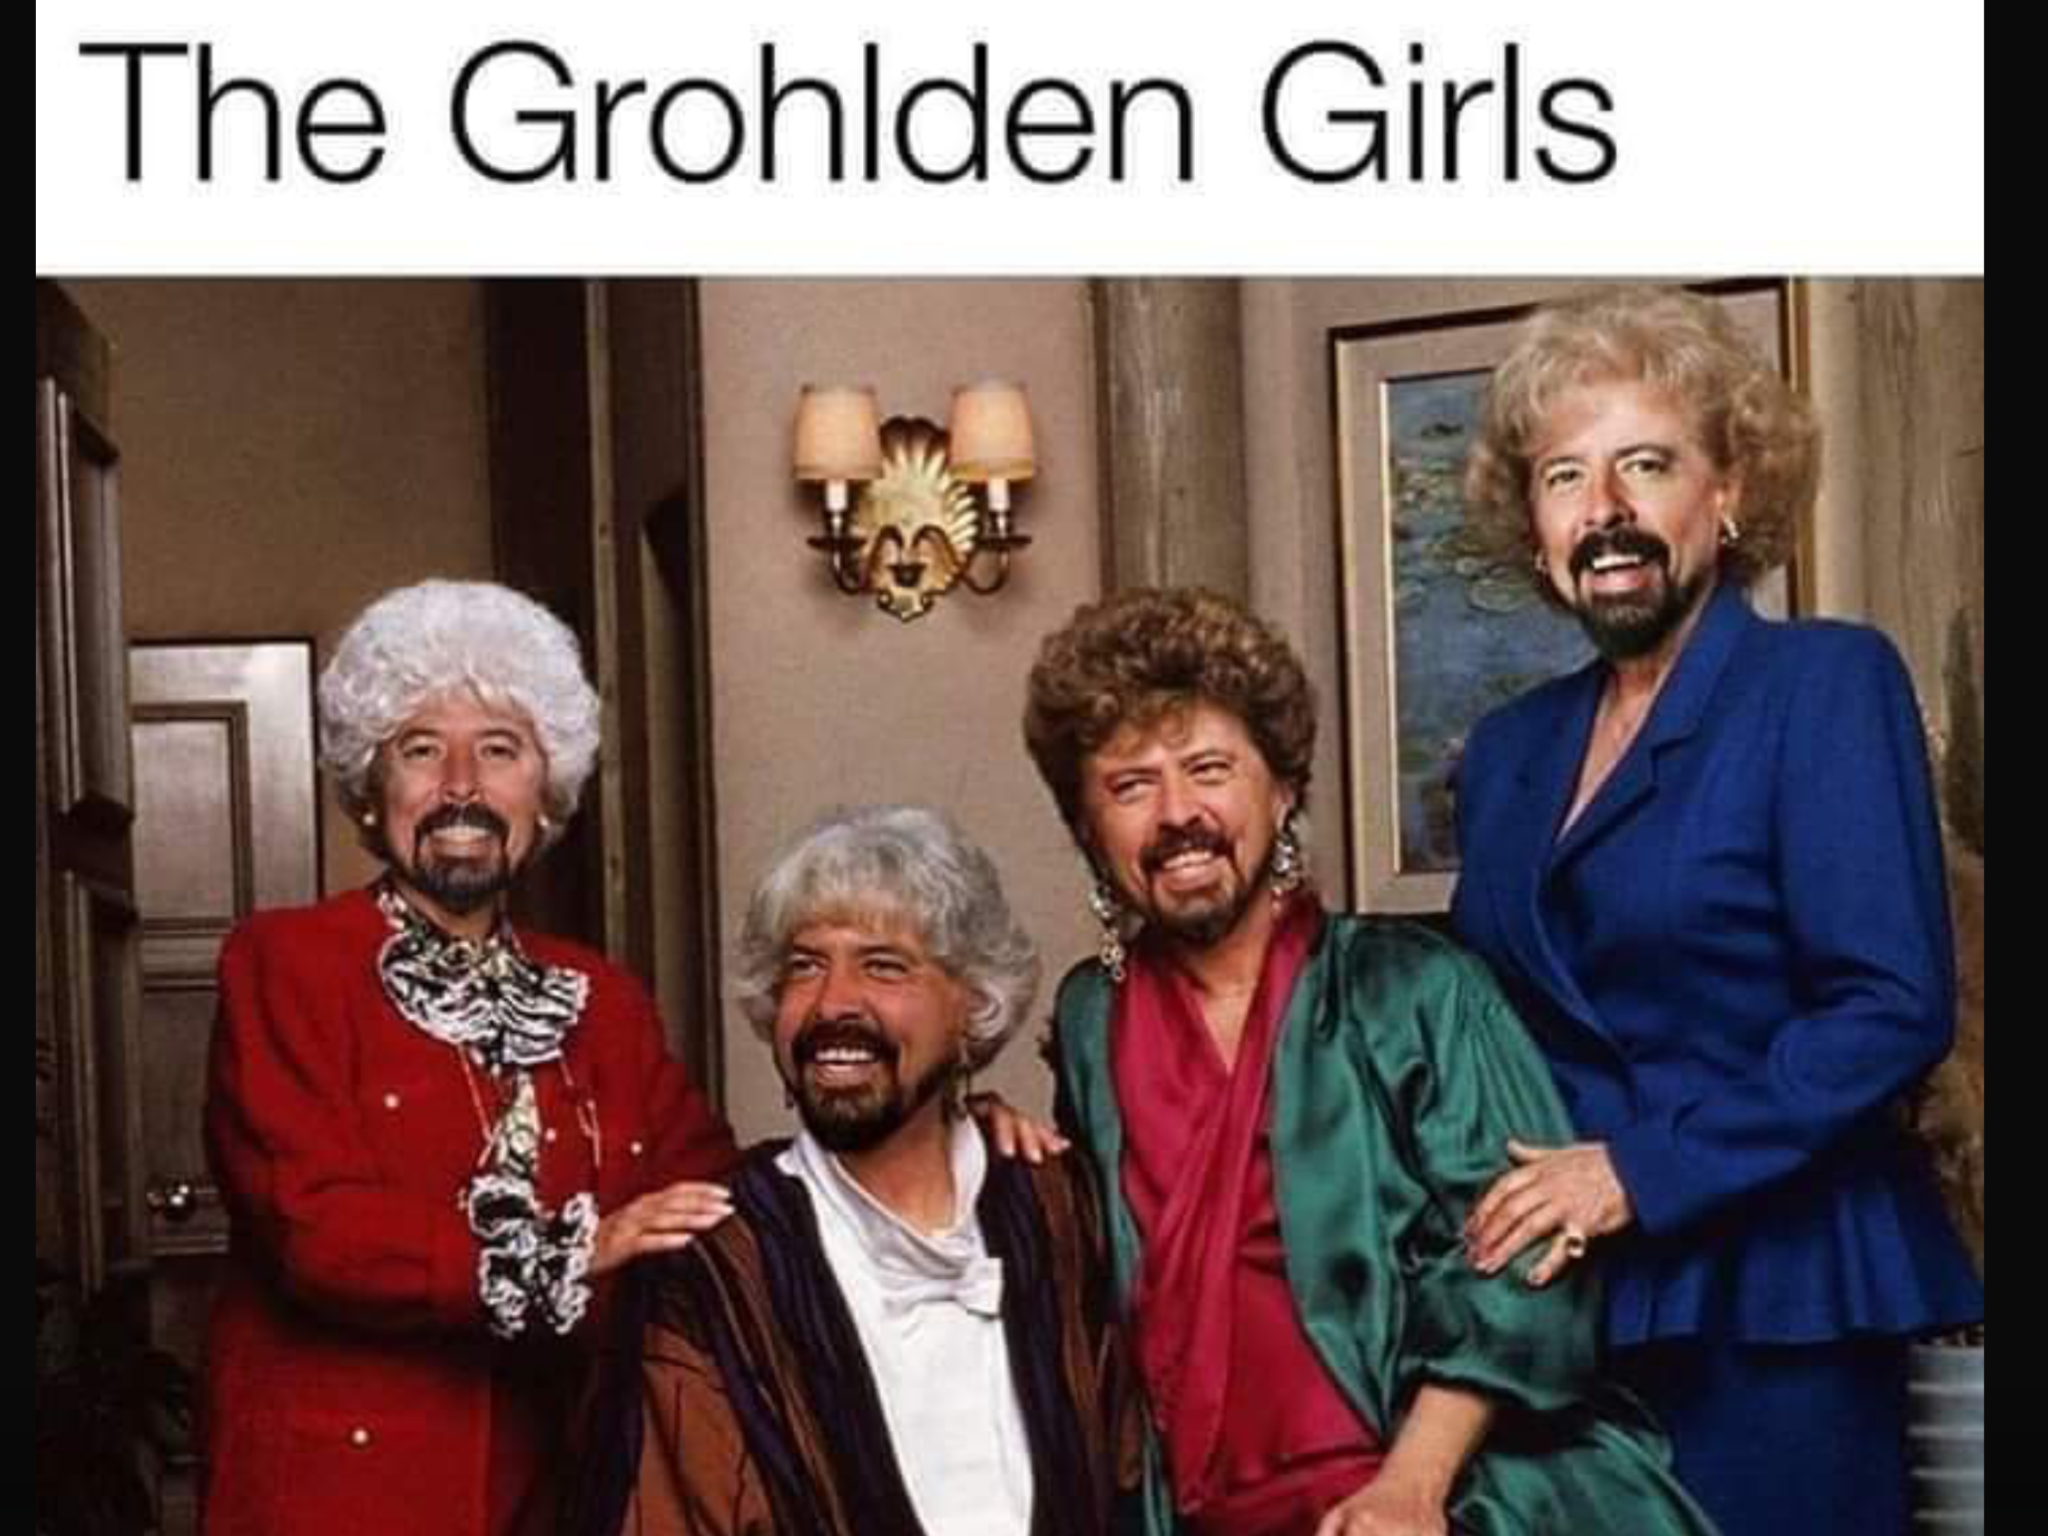 golden girls - The Grohlden Girls